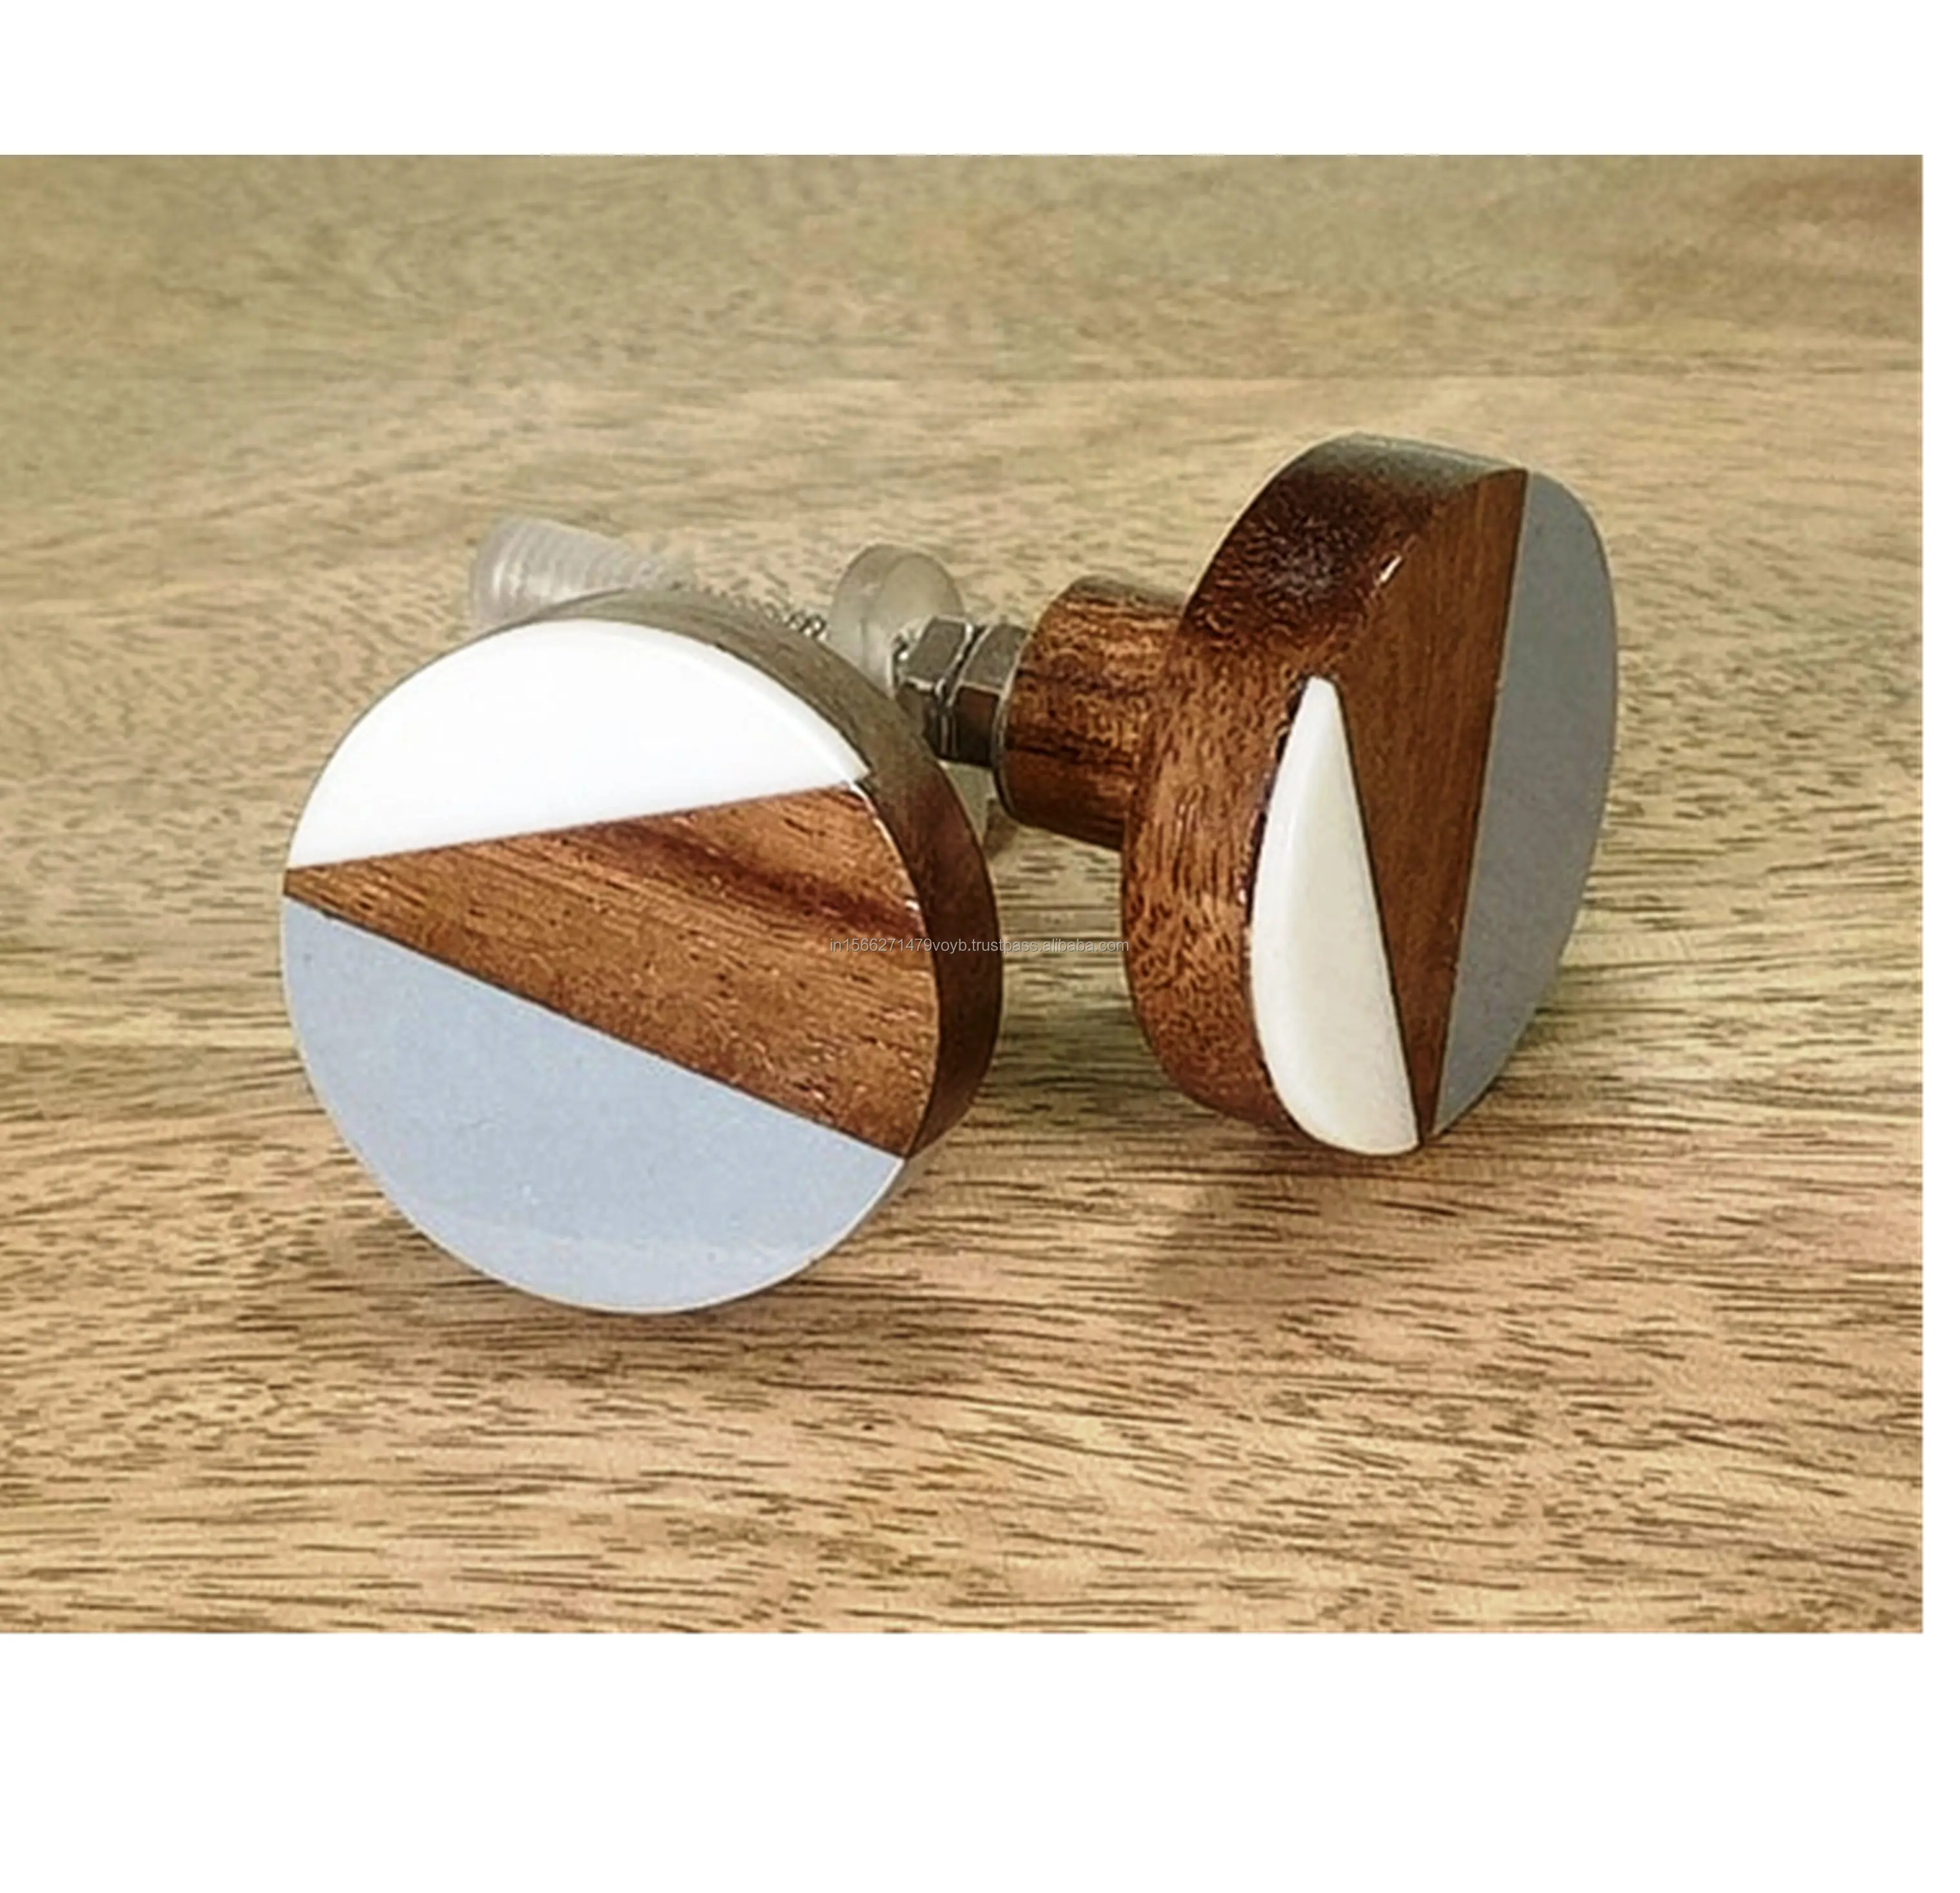 インド製の丸い幾何学的なアールデコドレッサーノブグレーの高級木製樹脂金属ドアキャビネットノブハンドルのセットを購入する